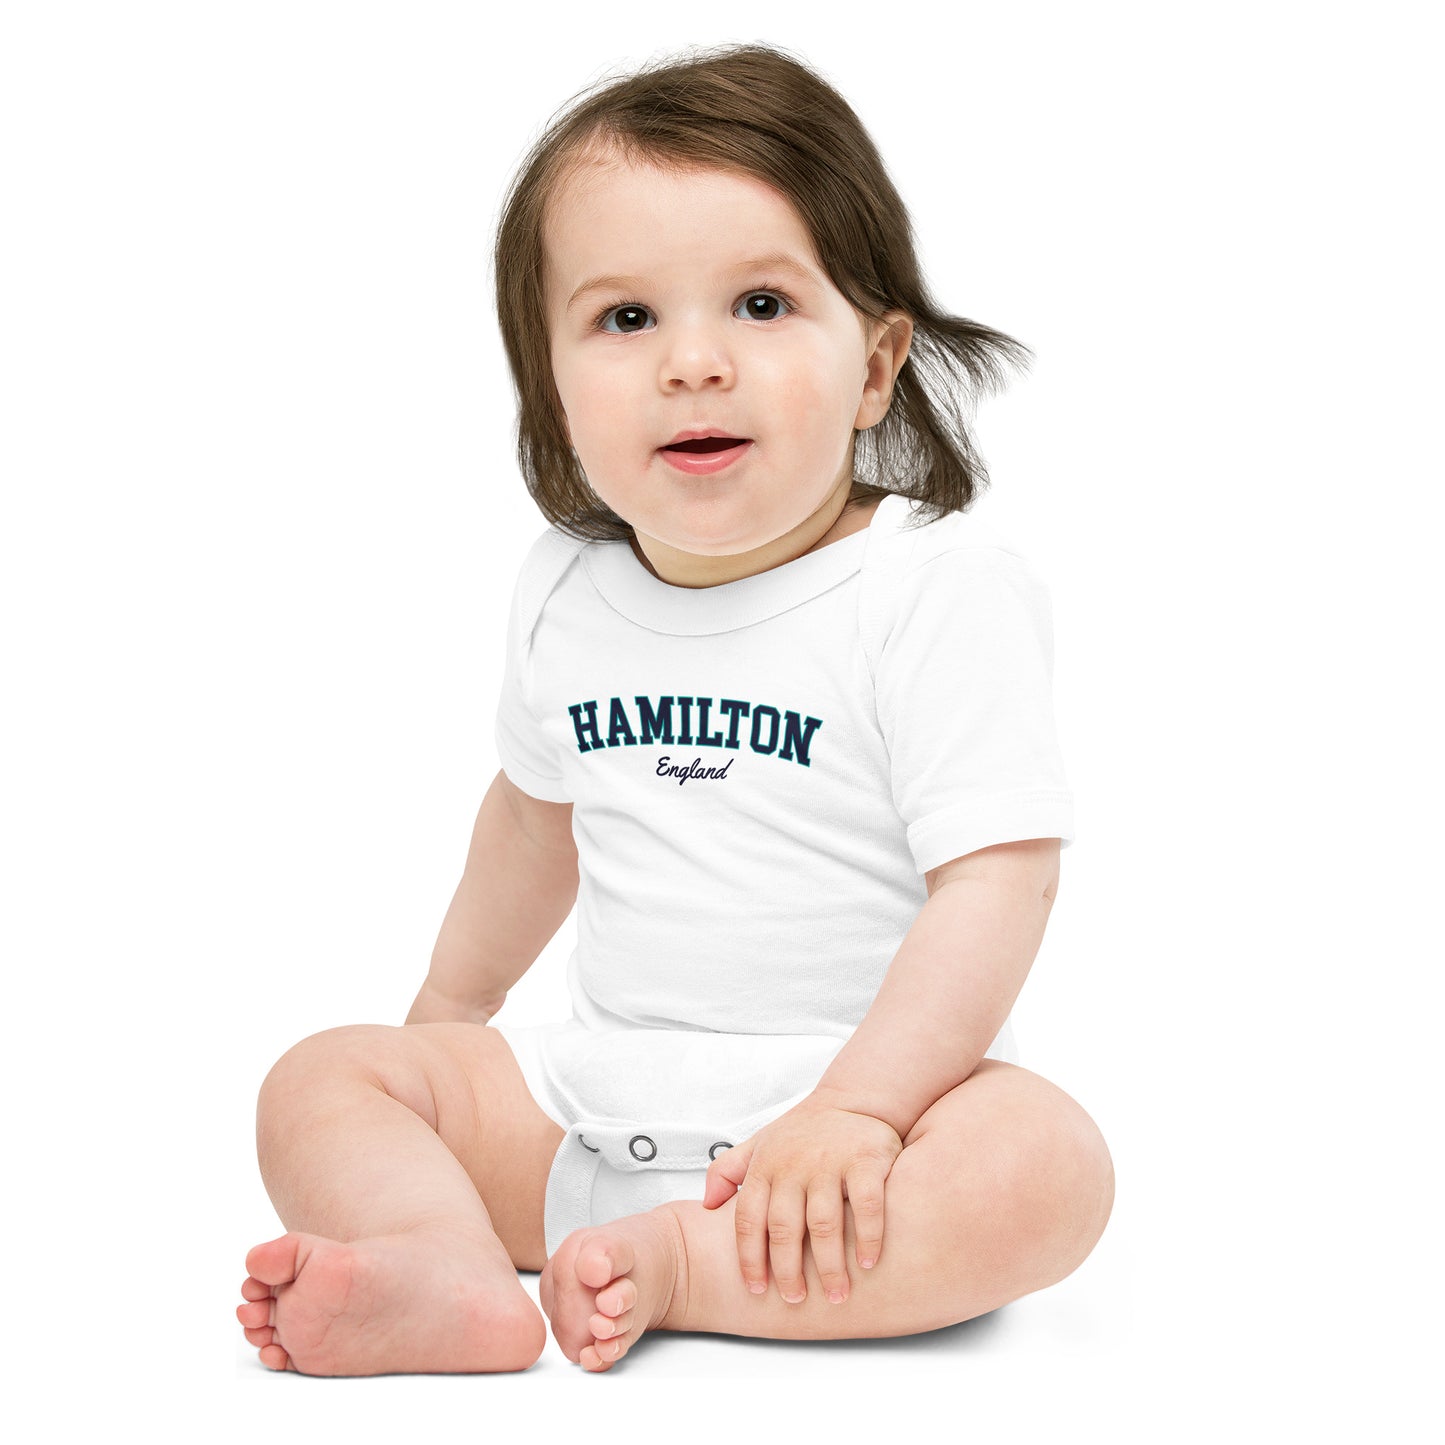 Hamilton Baby Onesie